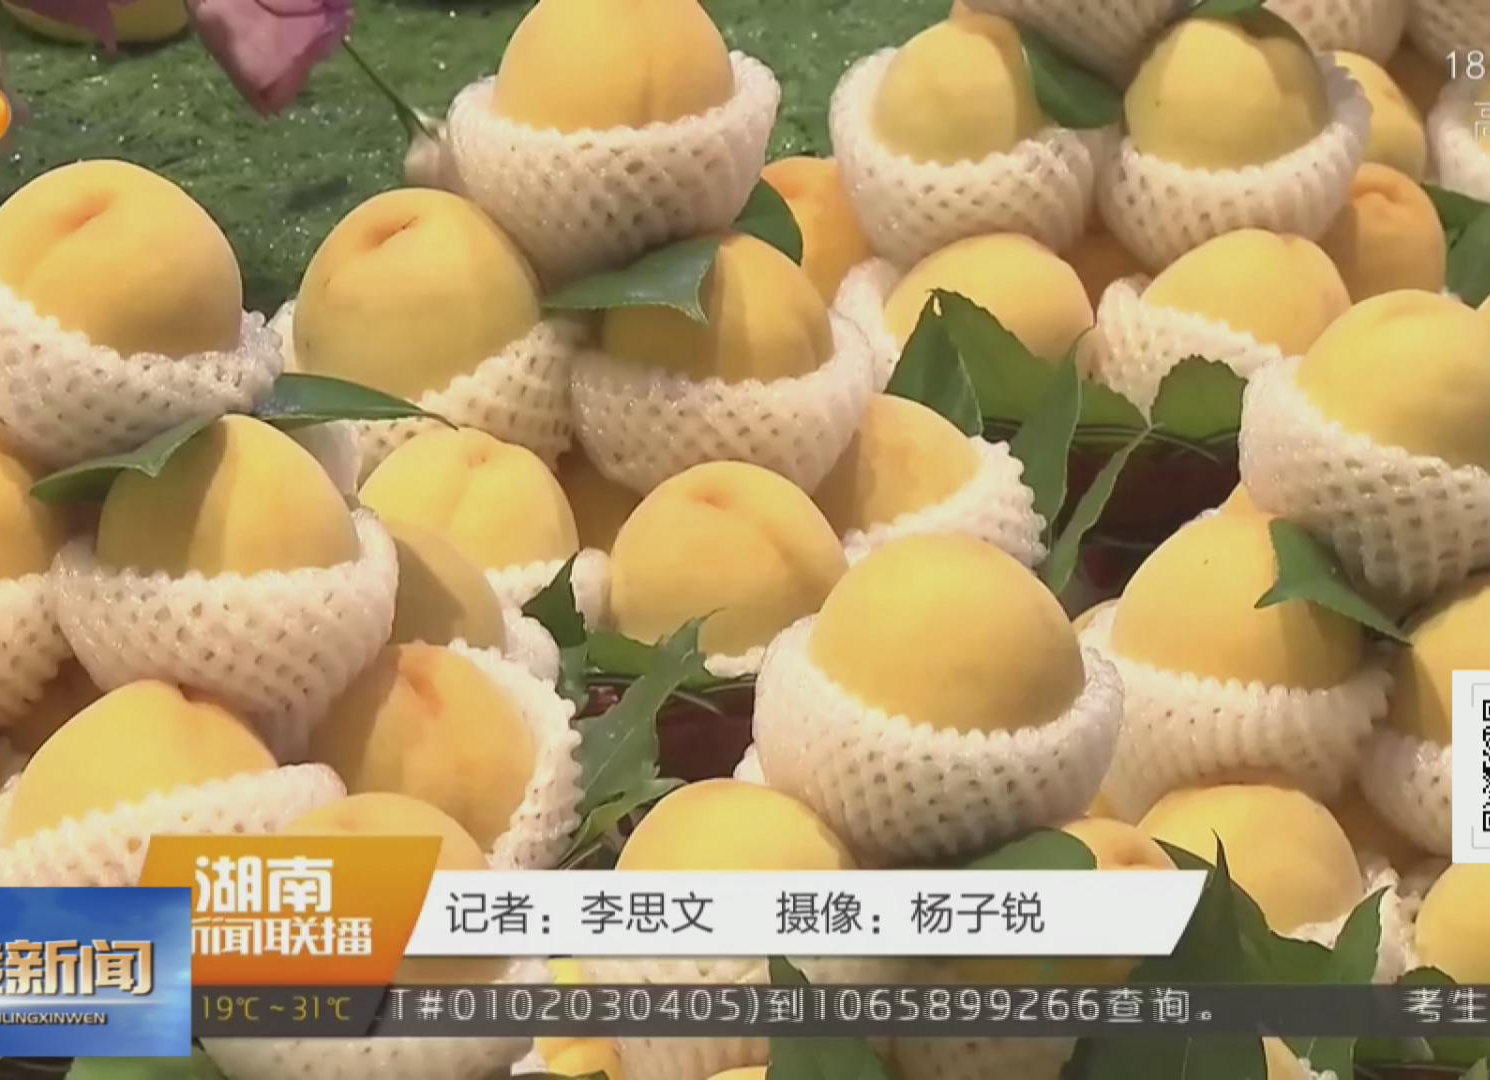 《湖南新闻联播》播出《炎陵黄桃甜蜜上市 预计产量超5.1万吨》【视频】